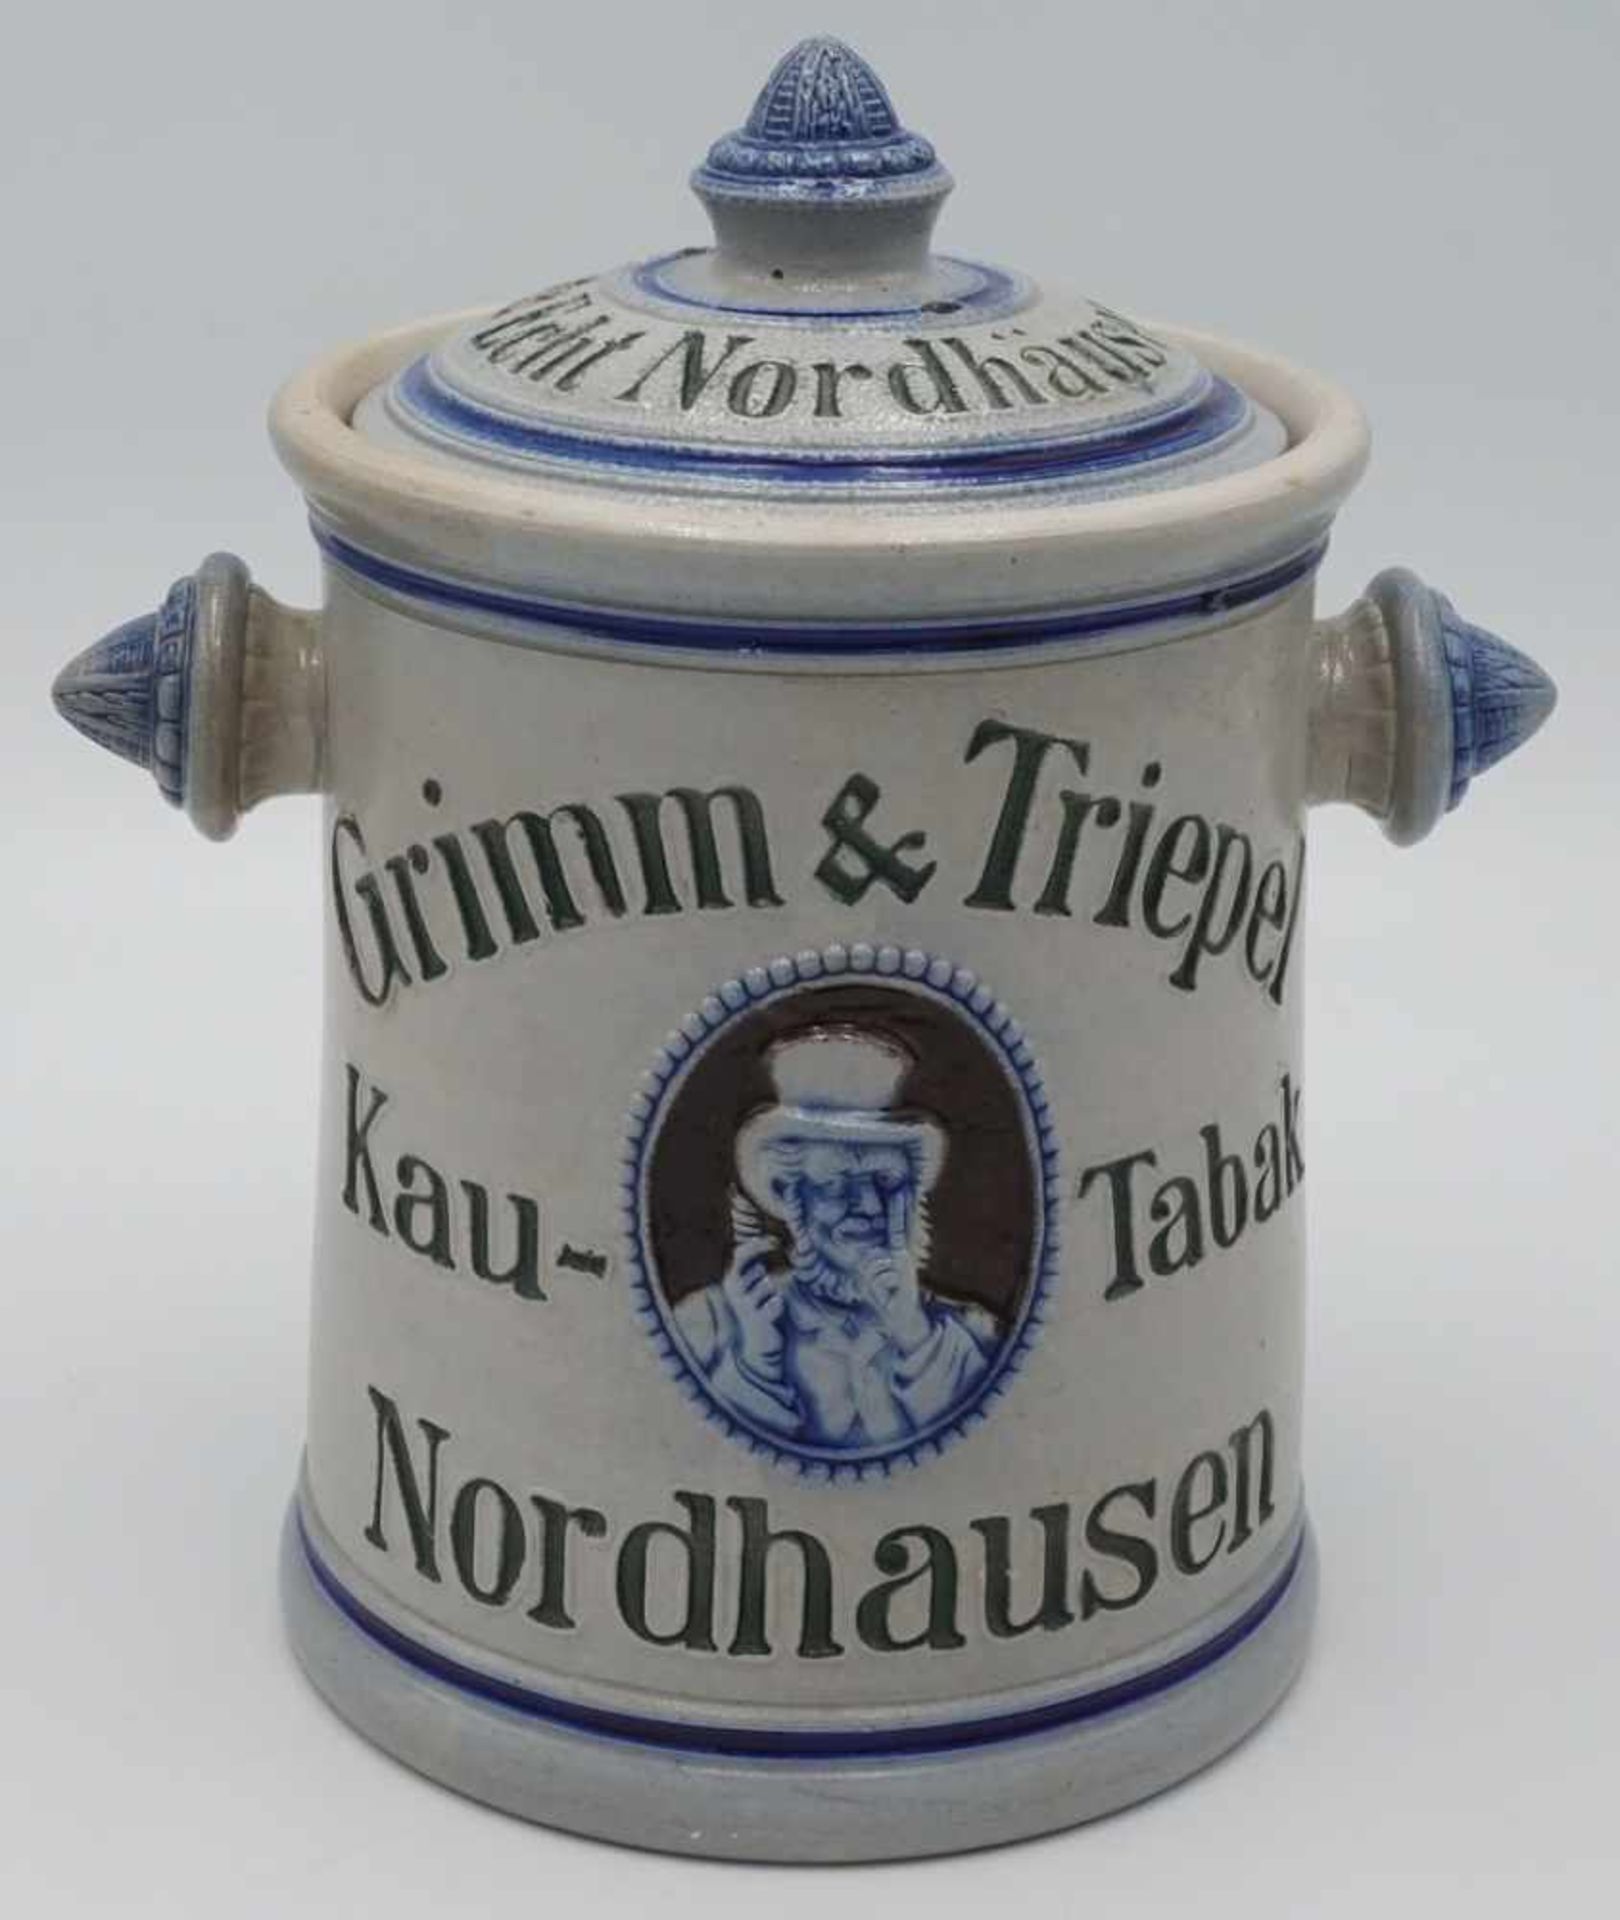 Westerwälder Steinzeug original Kautabaktopf, Grimm & Triepelhell glasiert, mit original Deckel,